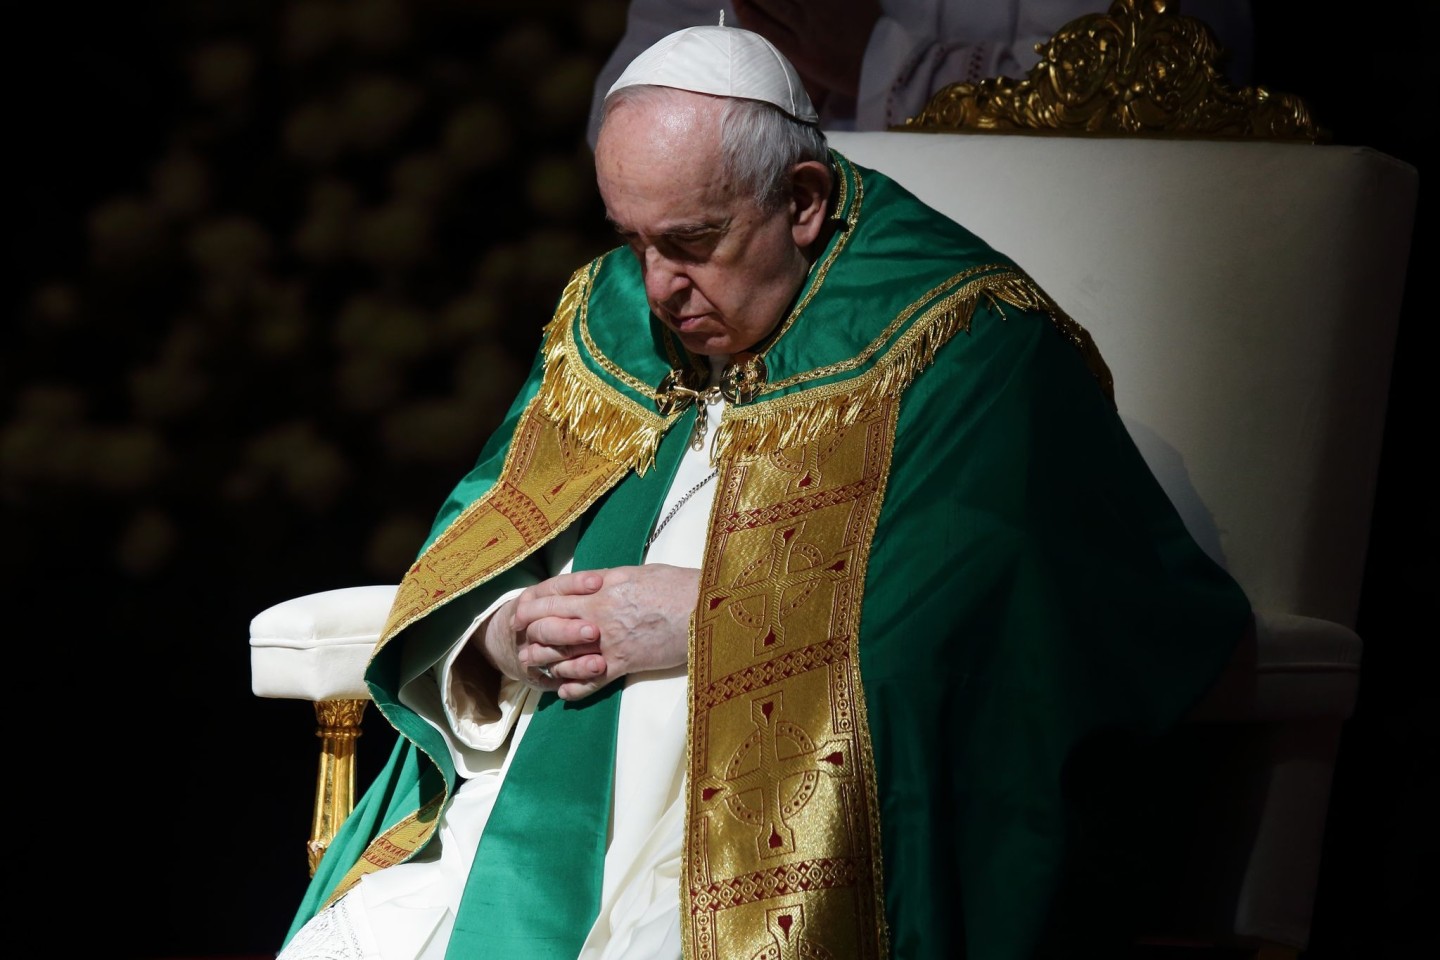 Papst Franziskus ist und die katholische Kirche in Deutschland haben ein angespanntes Verhältnis.